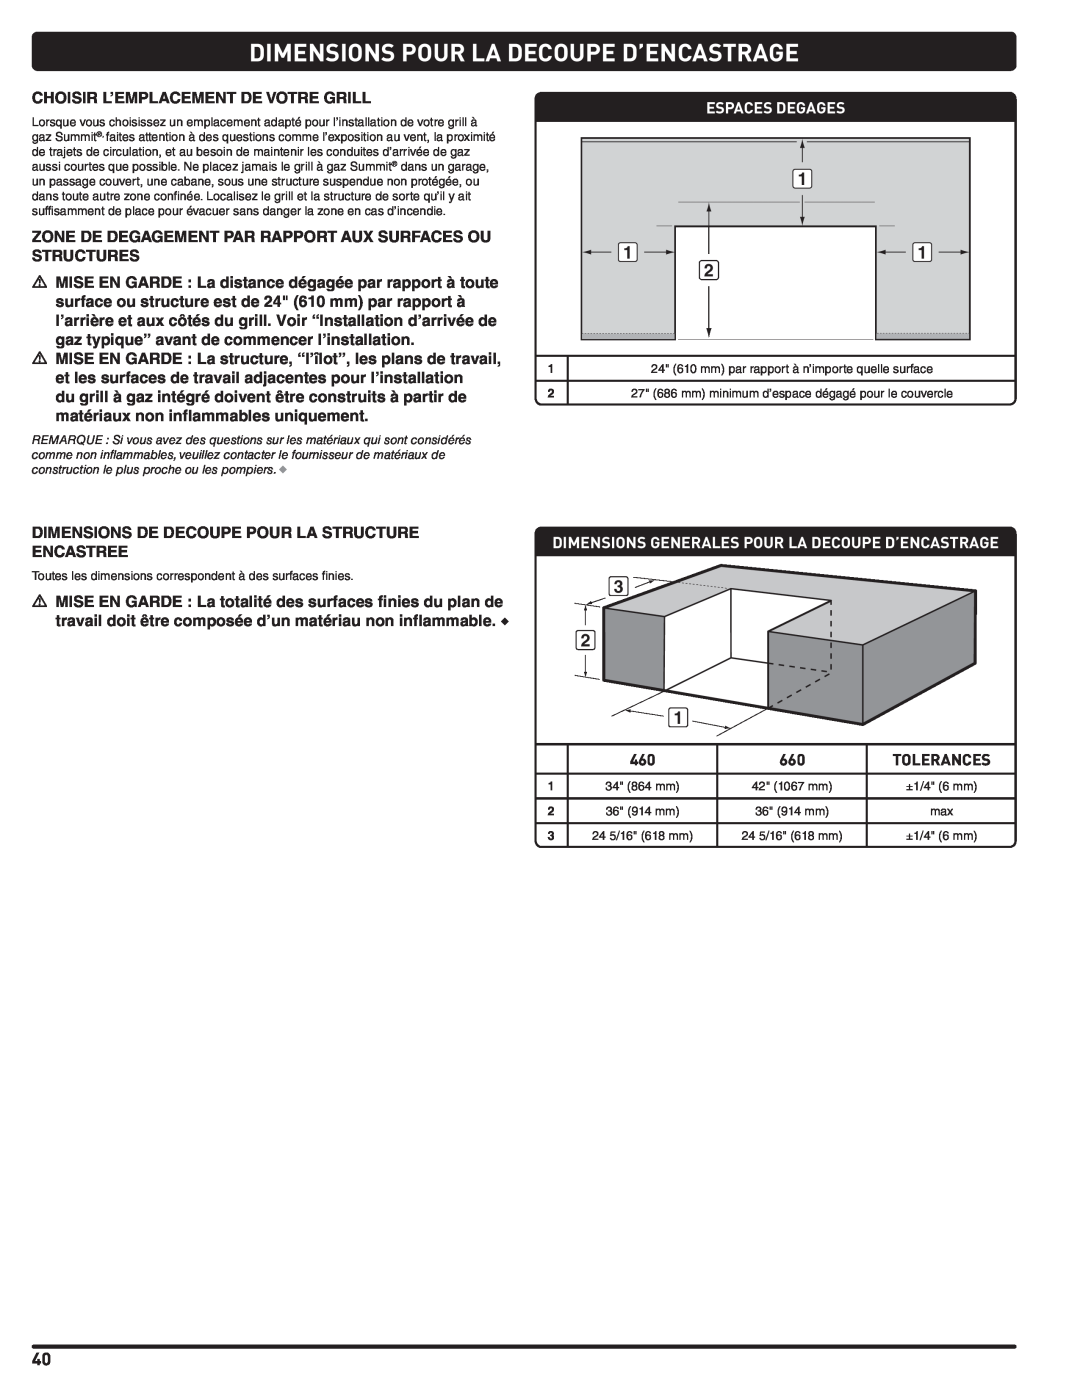 Weber Summit Gas Grill Dimensions Pour La Decoupe D’Encastrage, Choisir L’Emplacement De Votre Grill, Espaces Degages 